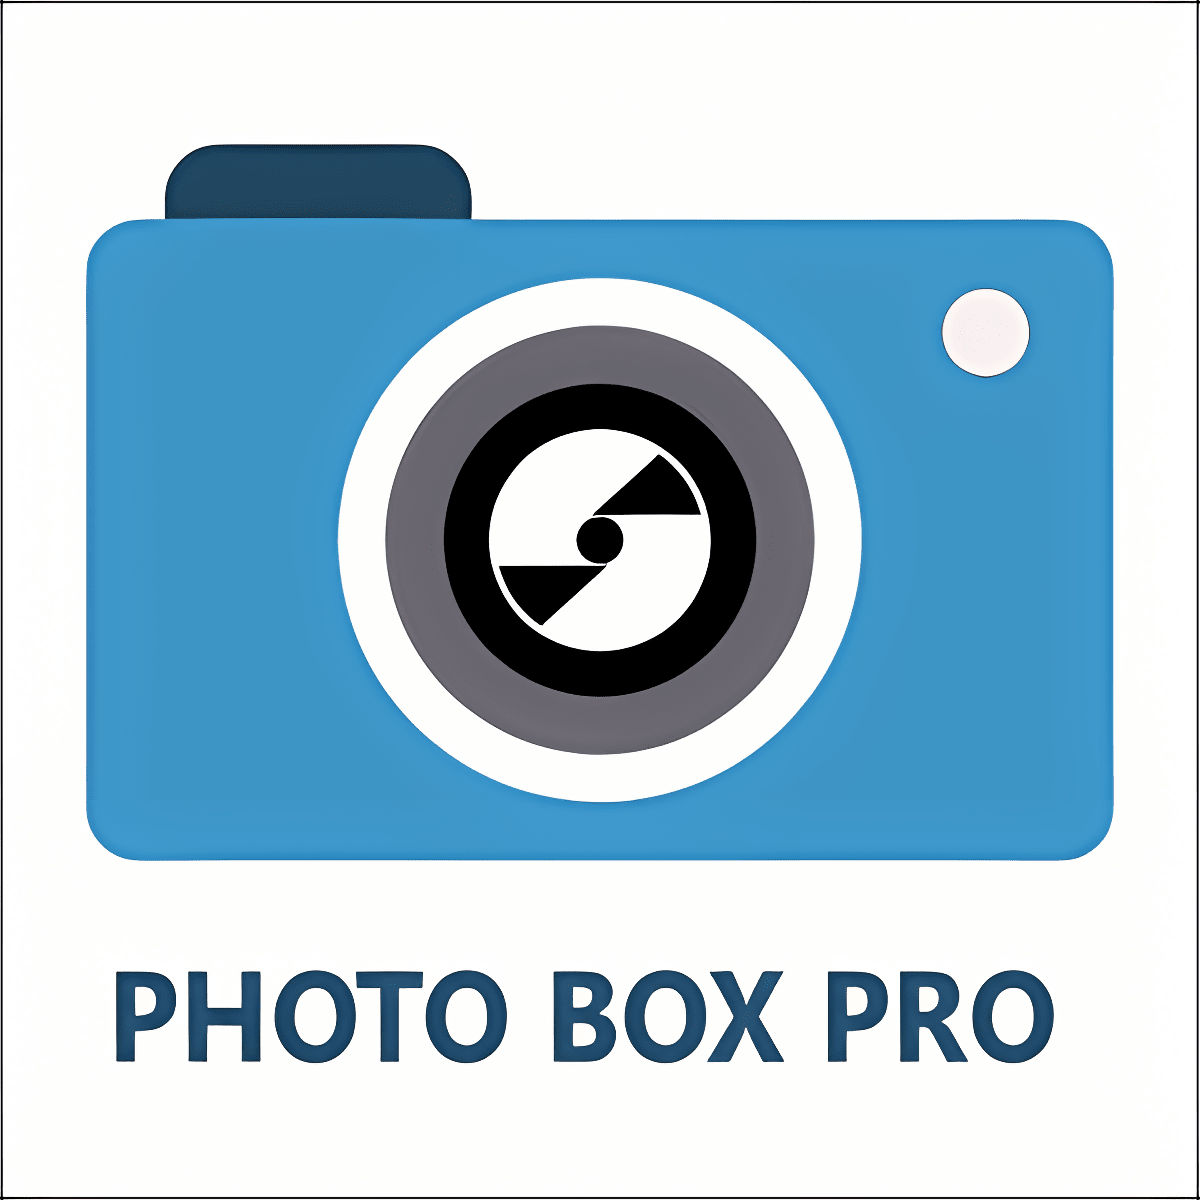 下载 Photo Box Pro 安装 最新 App 下载程序